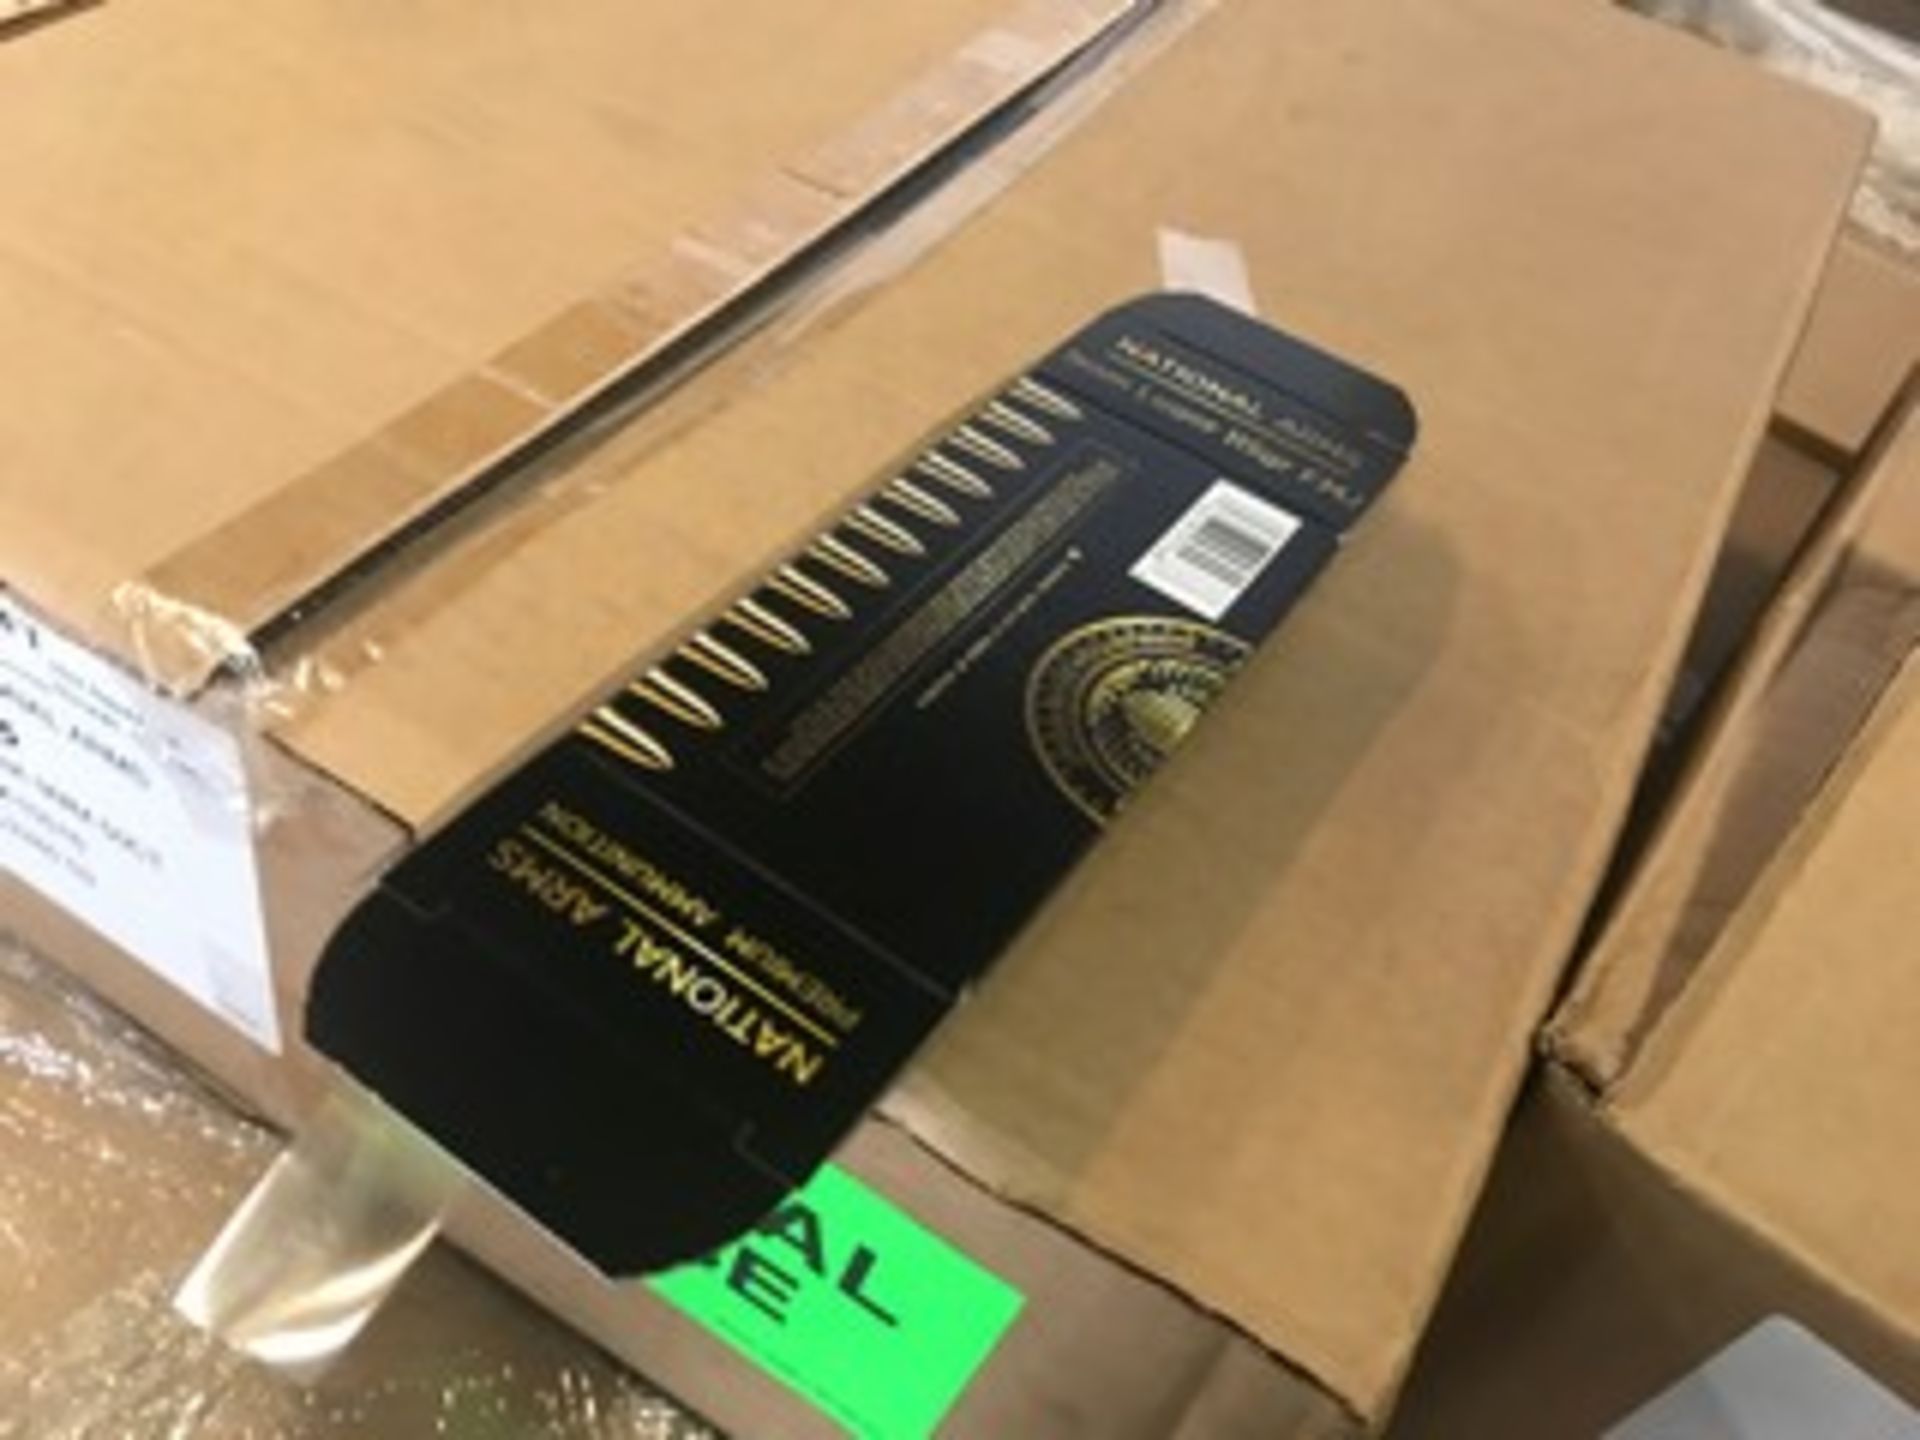 CASES RETAIL BOXES FOR 9mm AMMUNITION - 350 BOXES / CASE